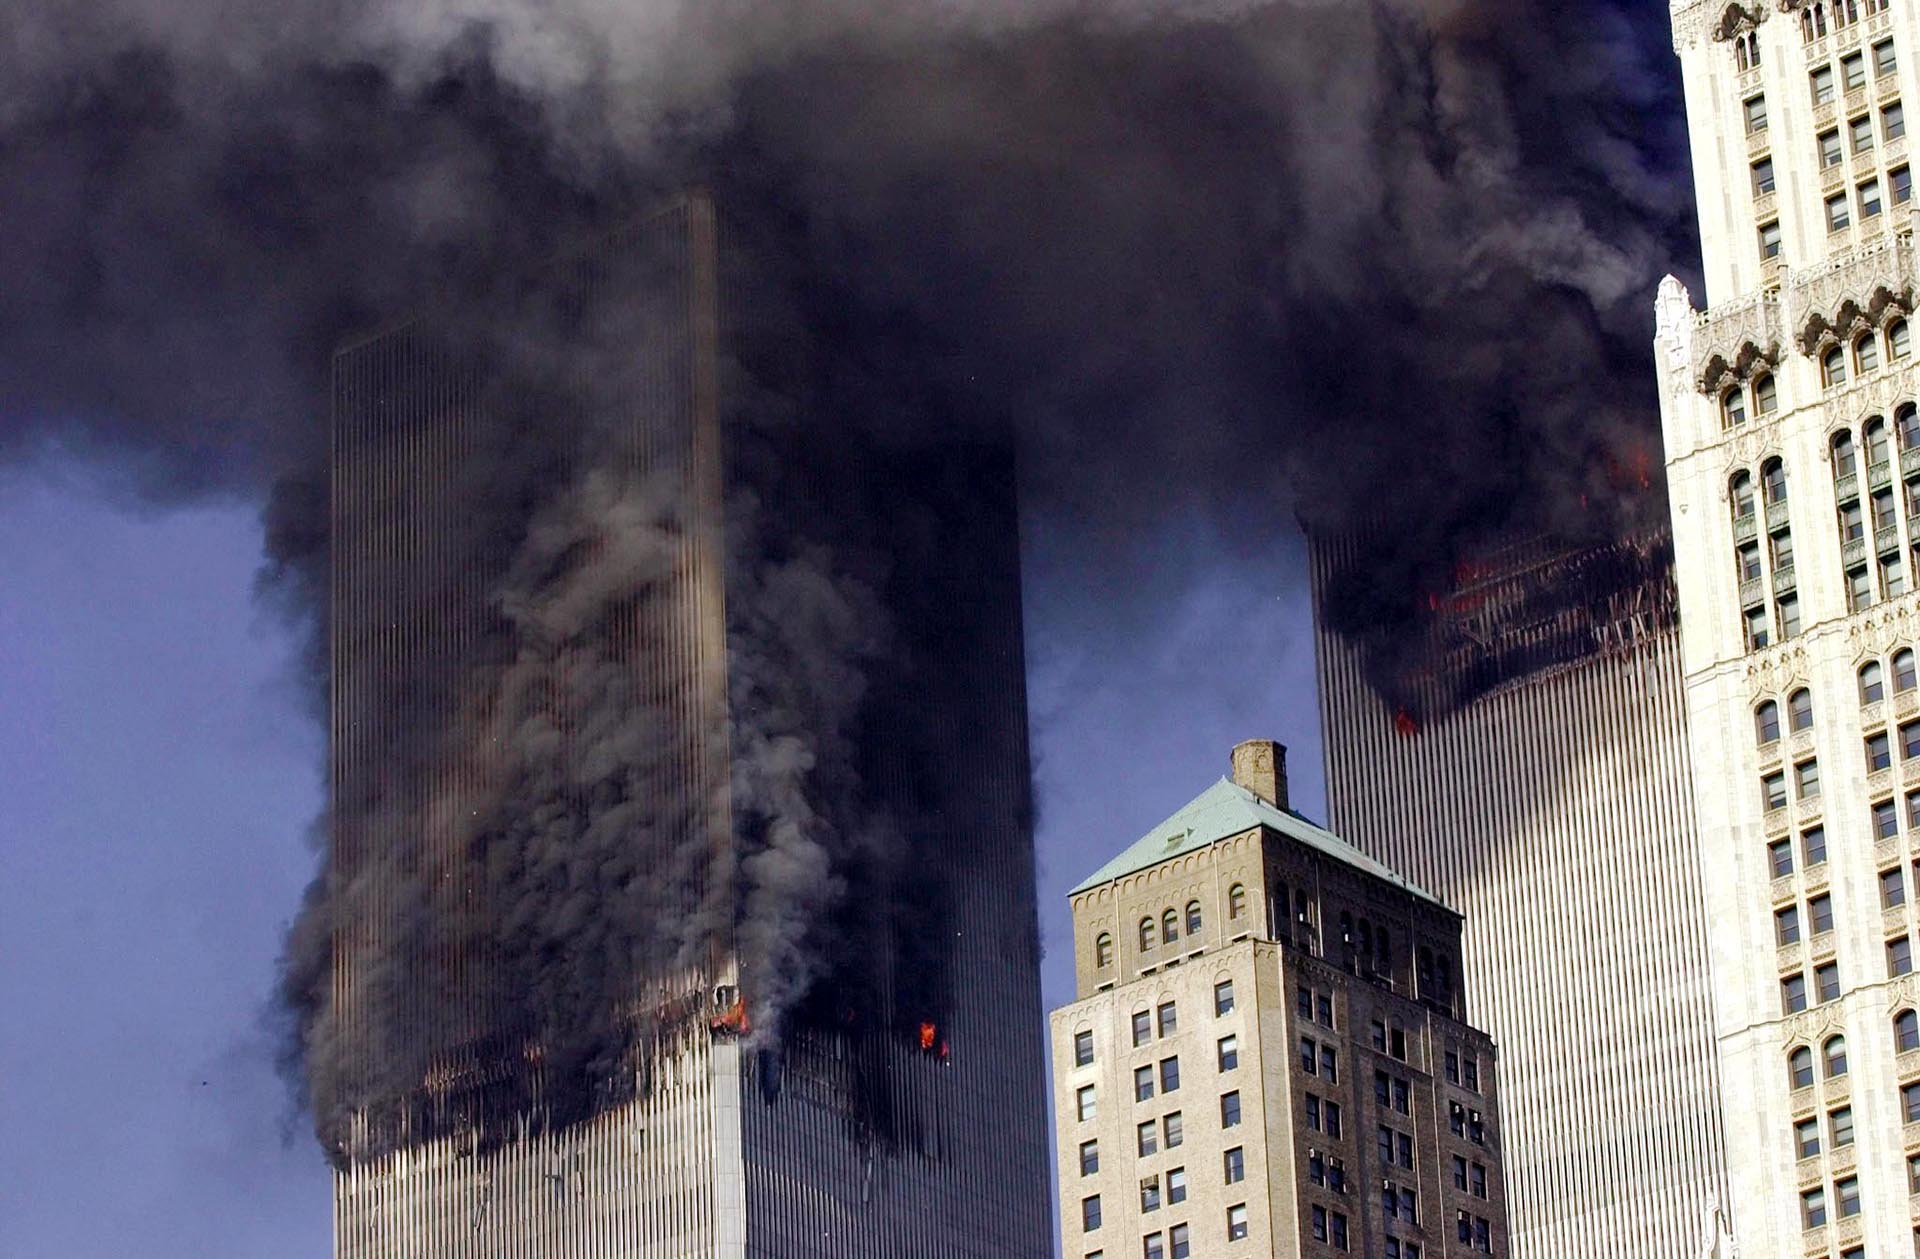 Az amerikai politika sikere, hogy nem volt több szeptember 11.